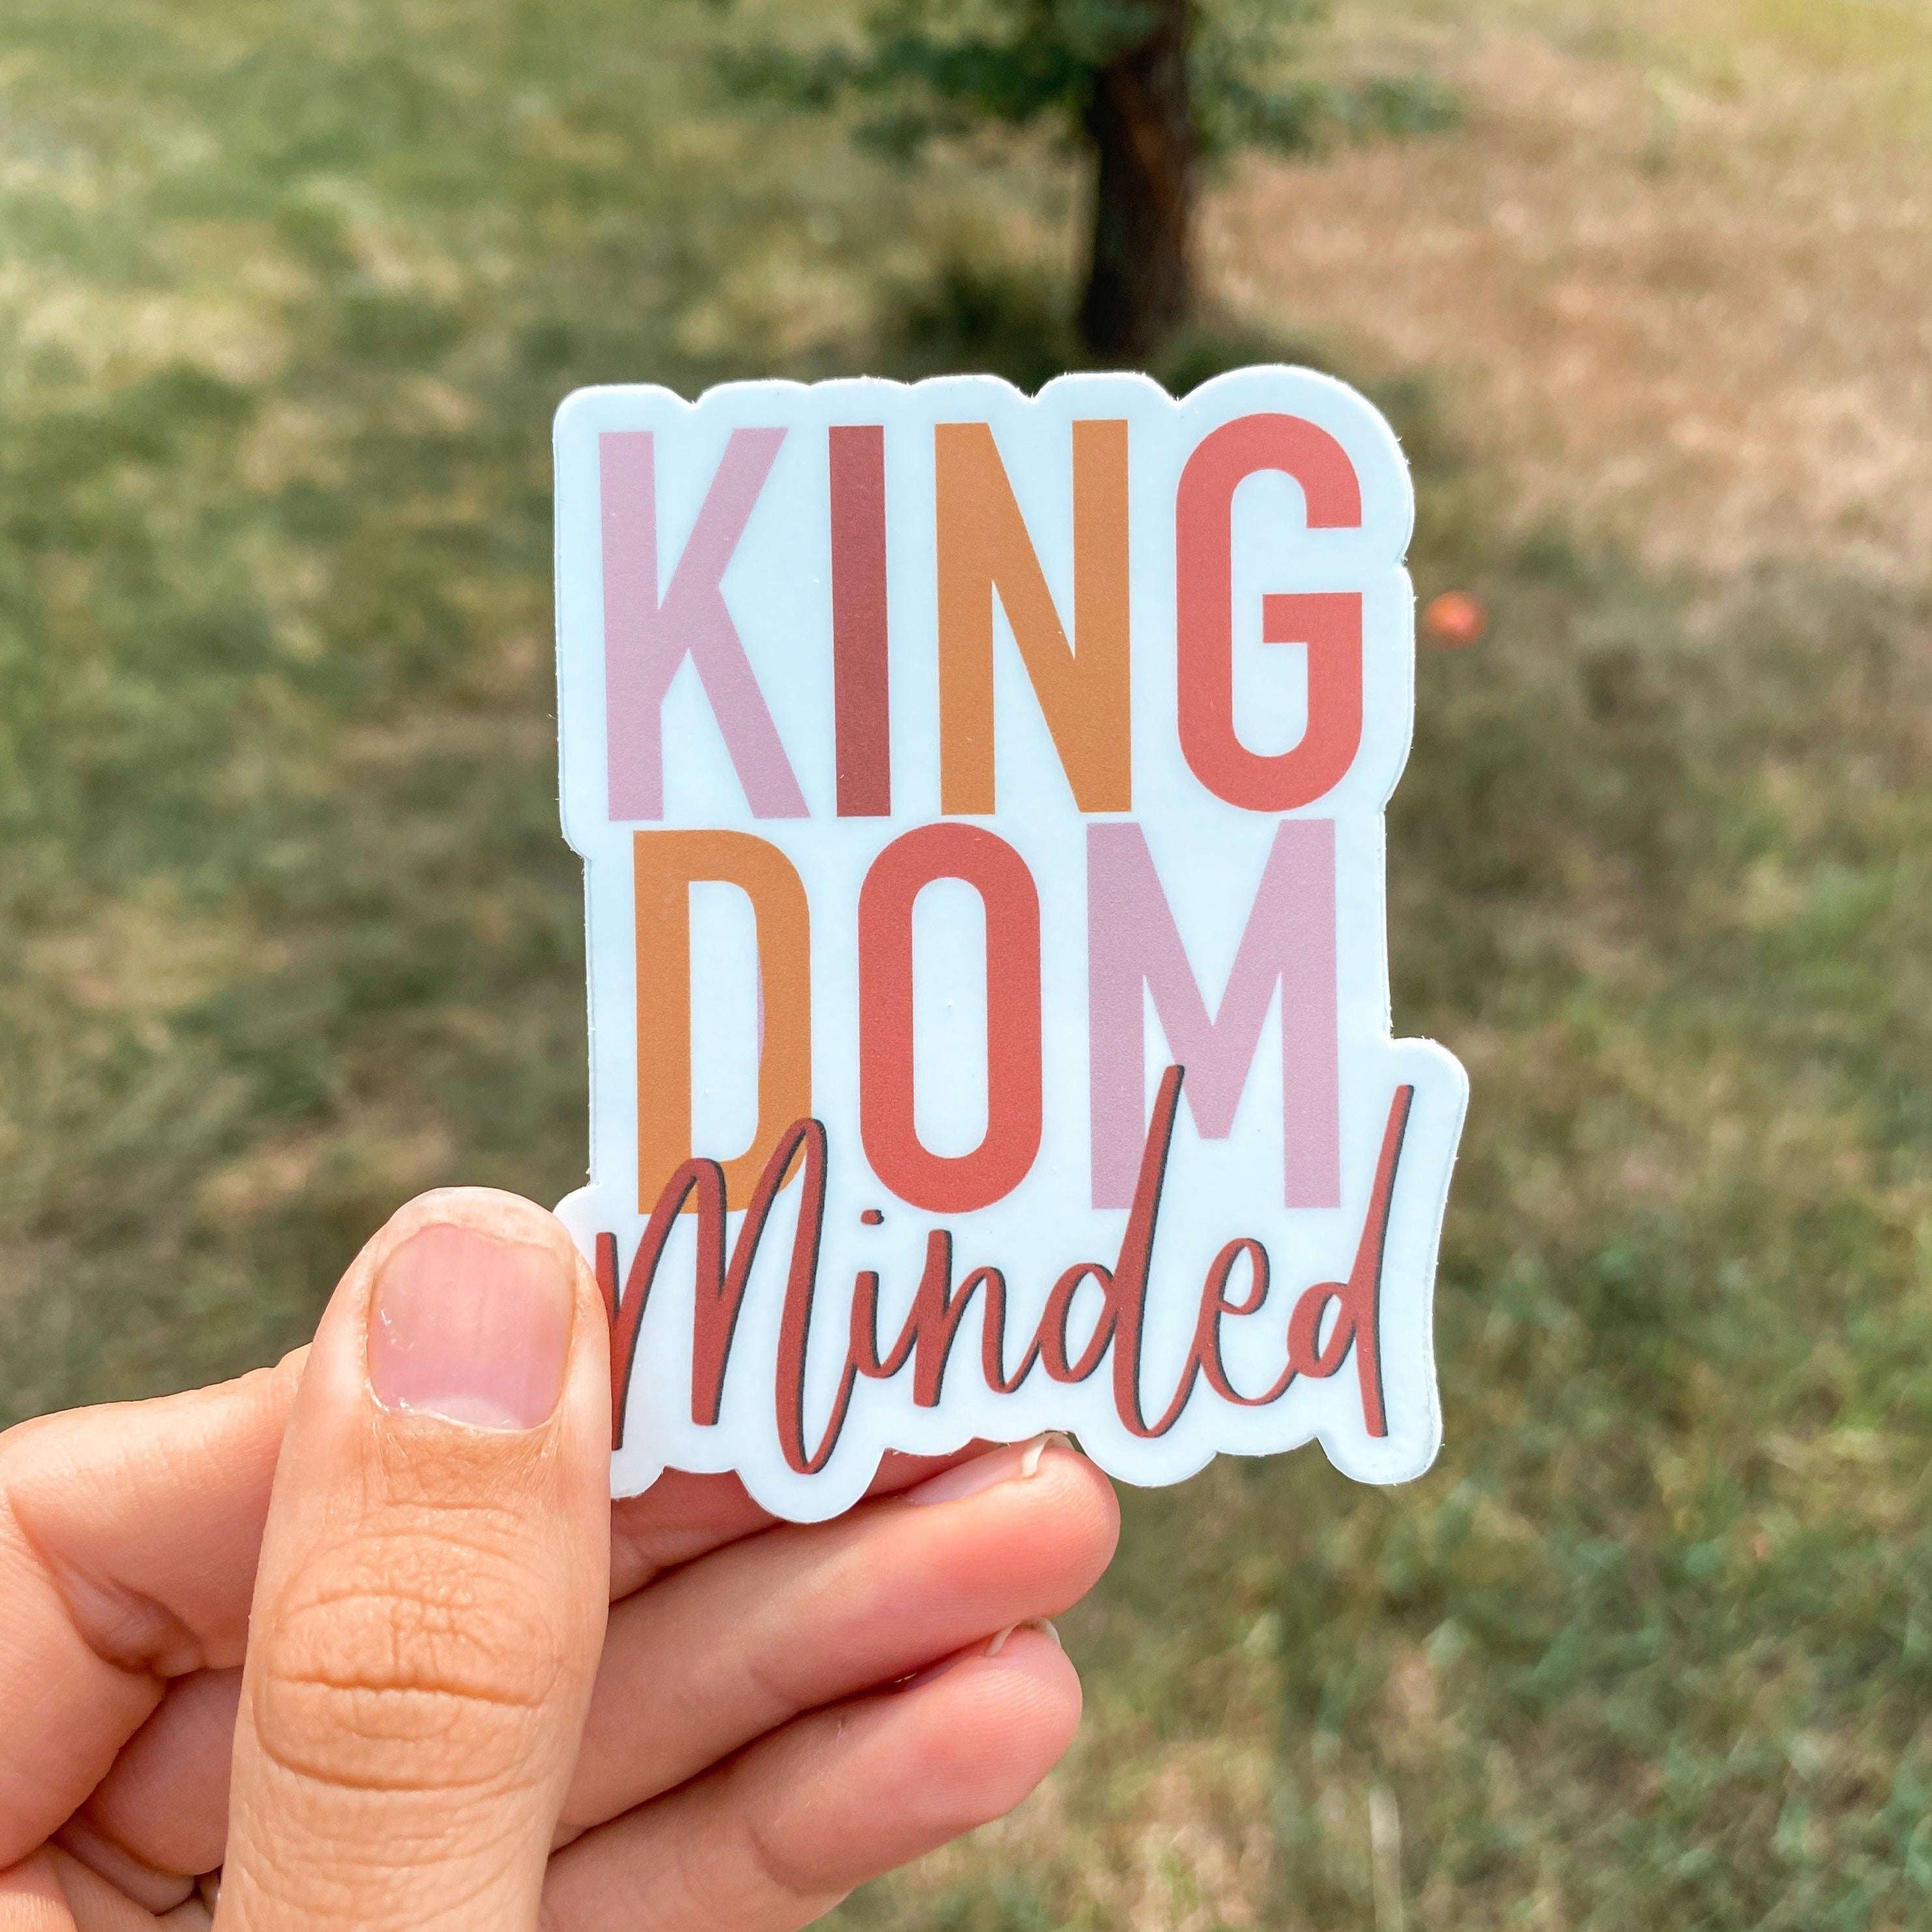 3x3 inch - Kingdom Minded - Sticker RTS